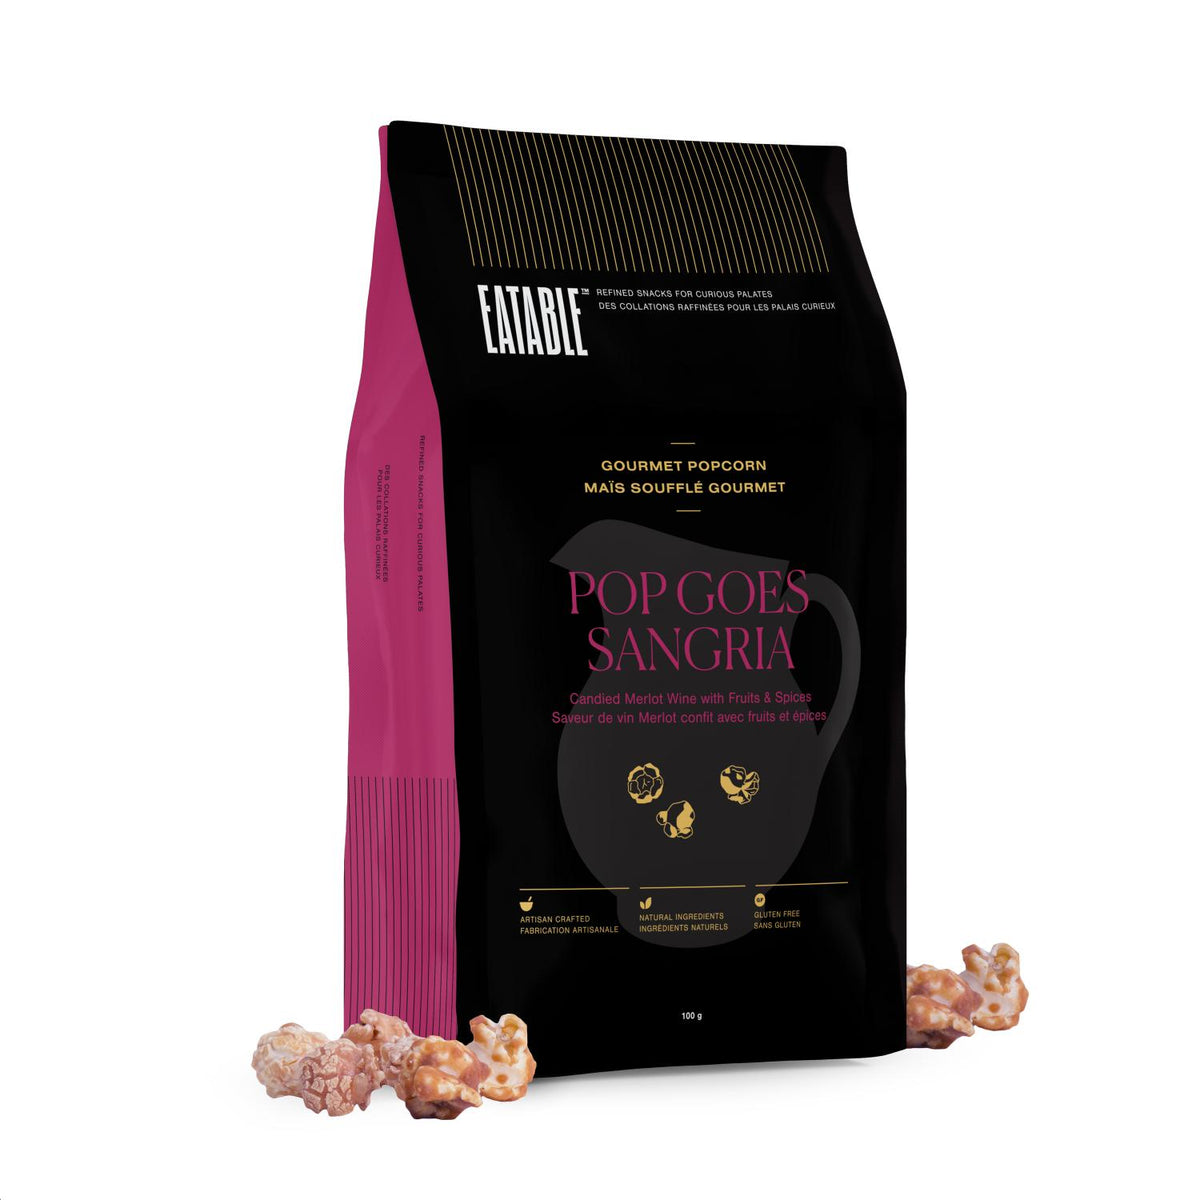 Pop Goes Sangria - Popcorn confit infusé au vin 100g